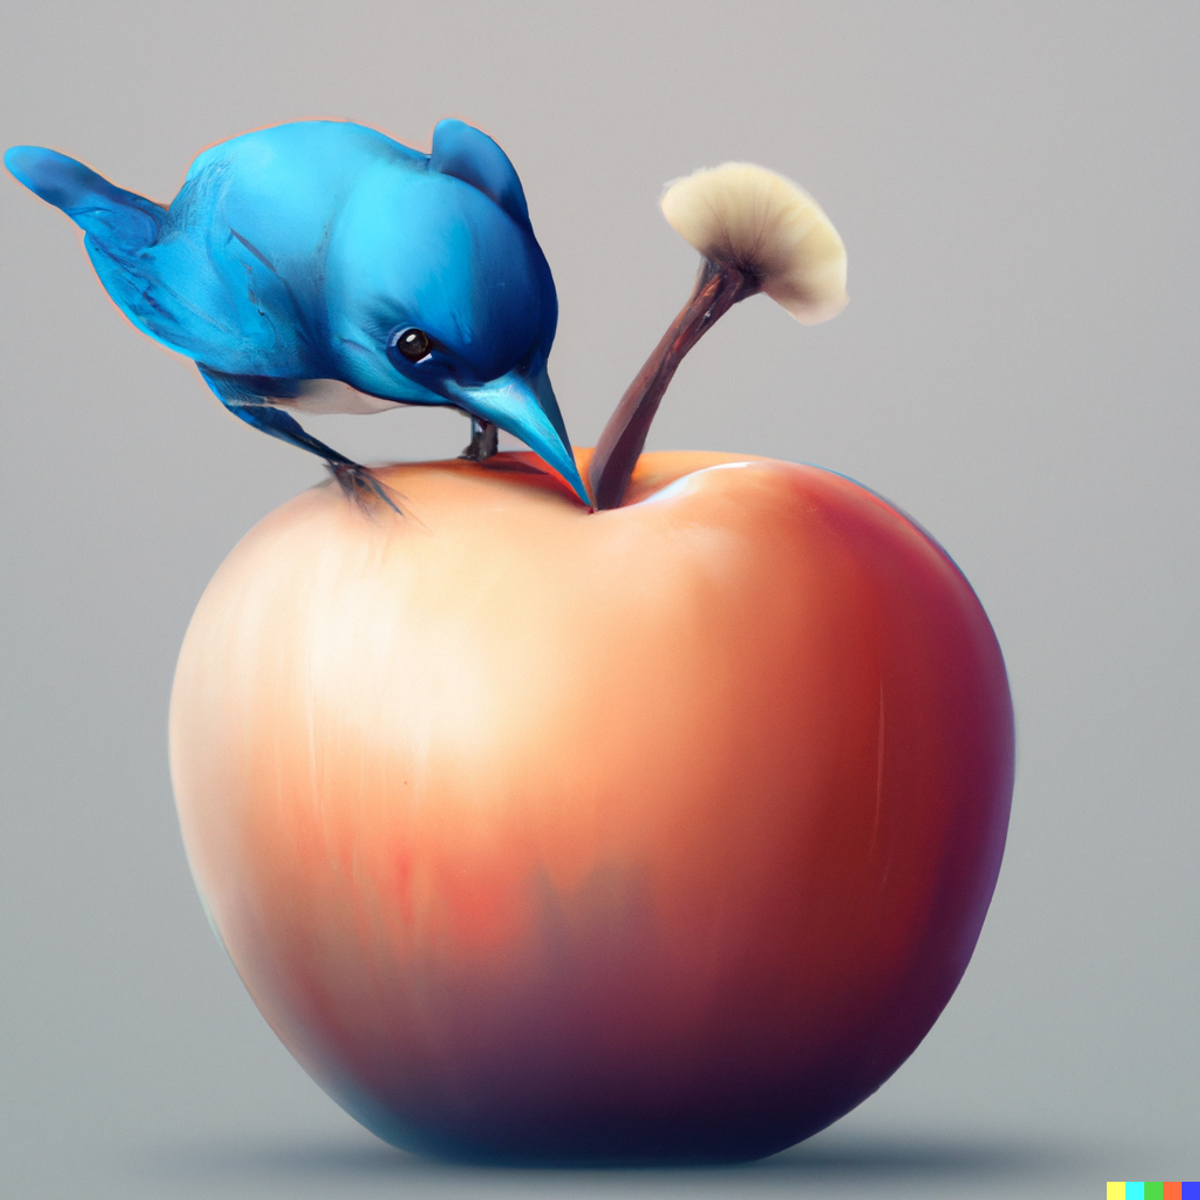 Bird attacking an Apple